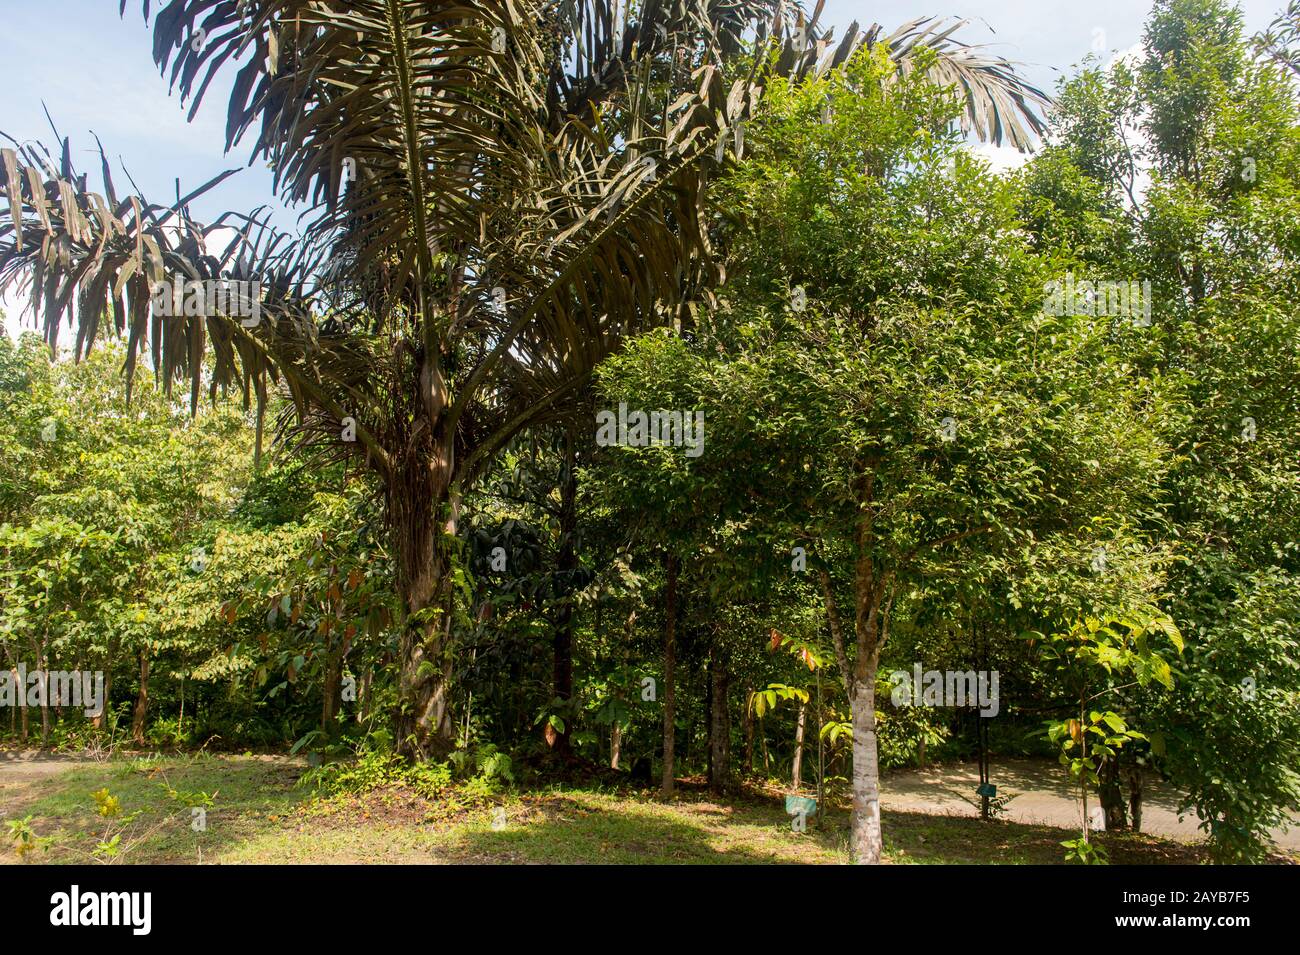 Palmier à sucre (Arenga pinnata) à Samboja, près de Balikpapan, sur Kalimantan, Indonésie. Banque D'Images